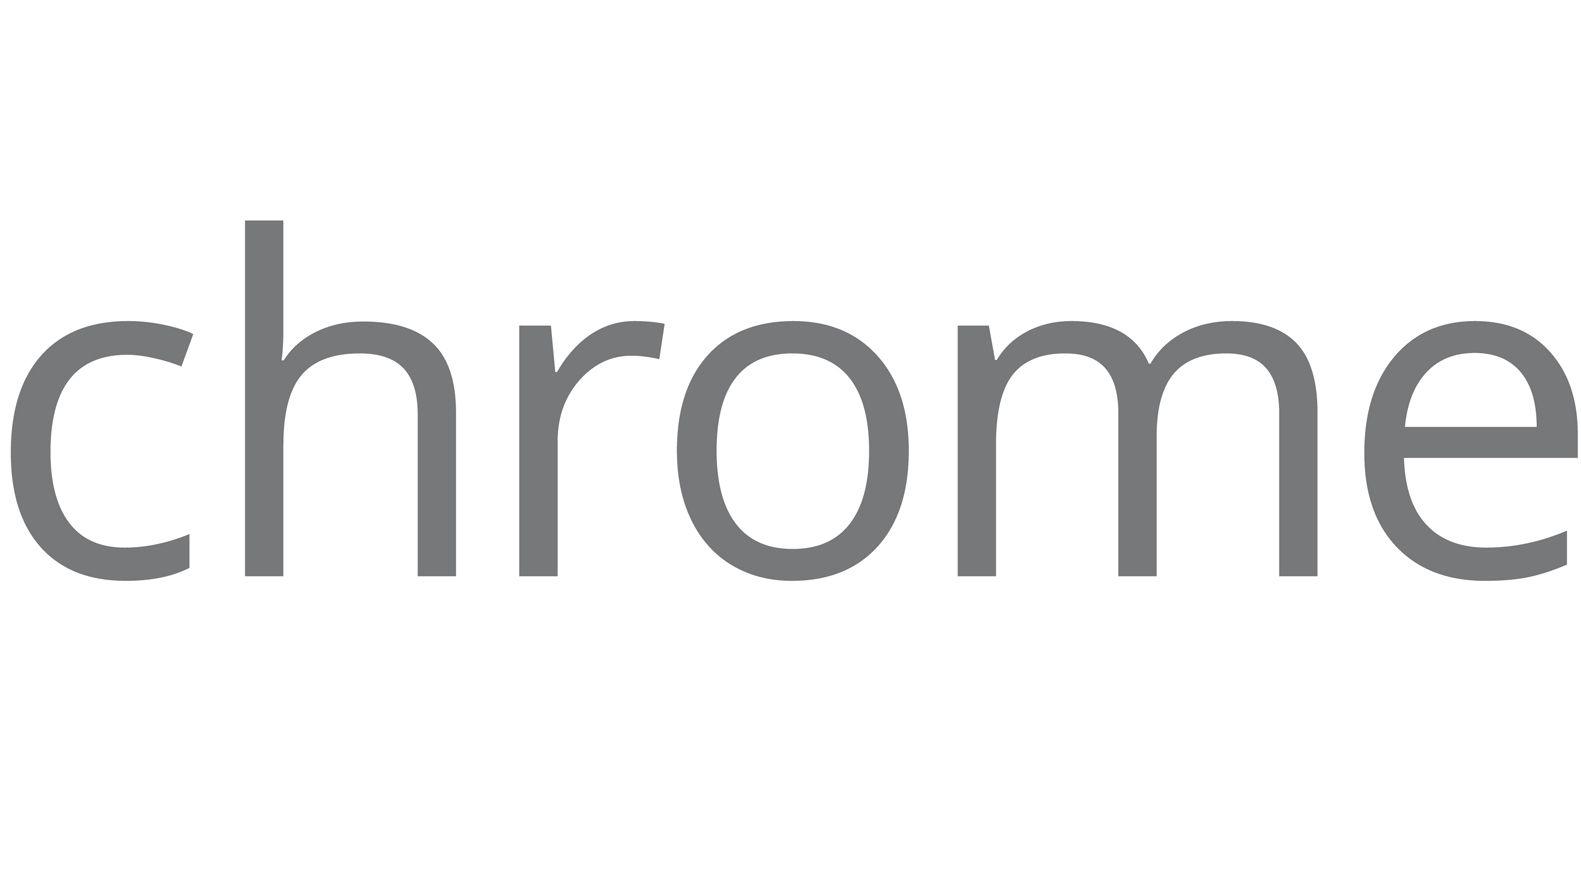 Google Chrome Browser Logo - Chrome Logo, Chrome Symbol, Meaning, History and Evolution